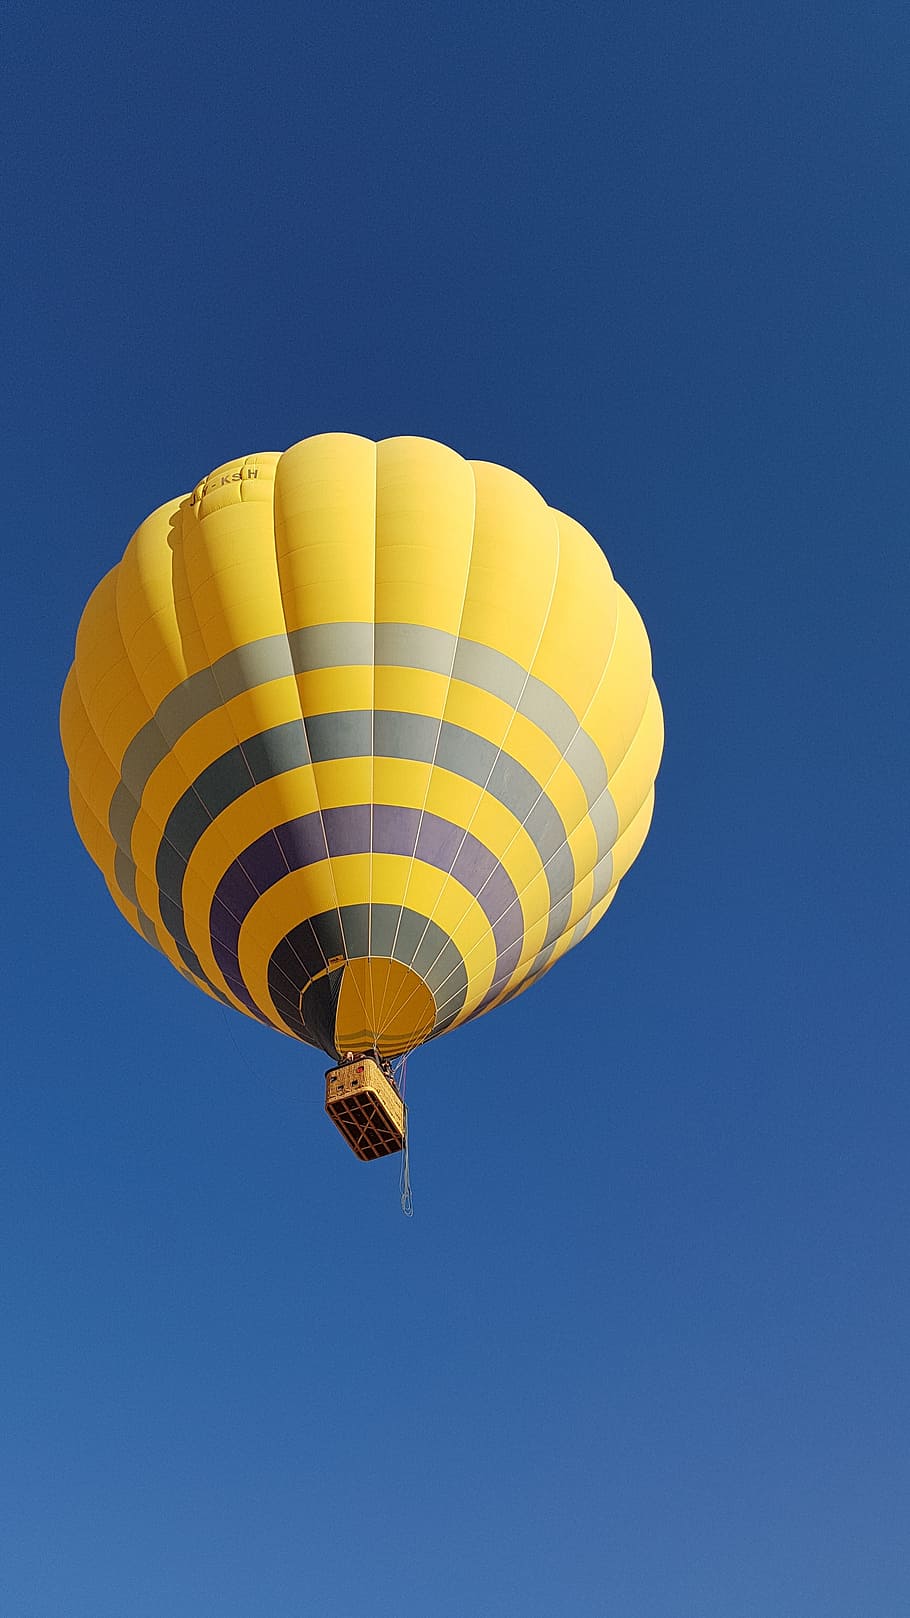 balon, udara, langit, parasut, balon udara panas, petualangan, penerbangan, olahraga ekstrim, pemandangan sudut rendah, transportasi